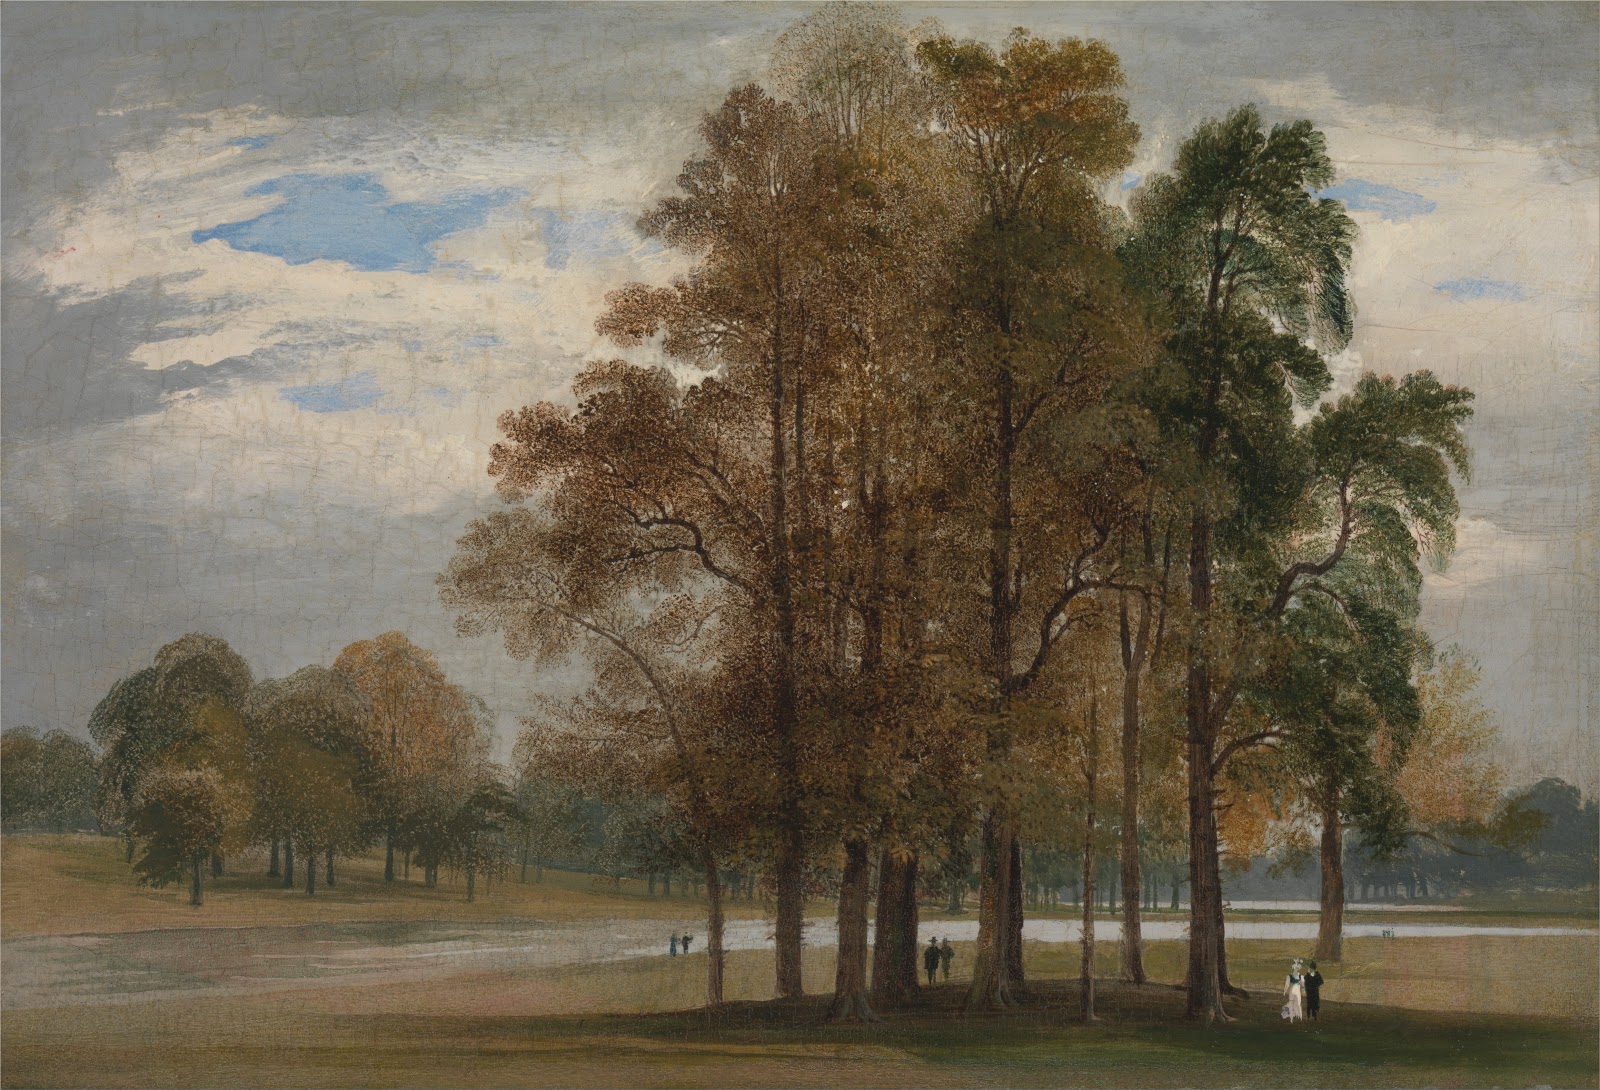 John+Martin+Landscape-1789-1854 (47).jpg